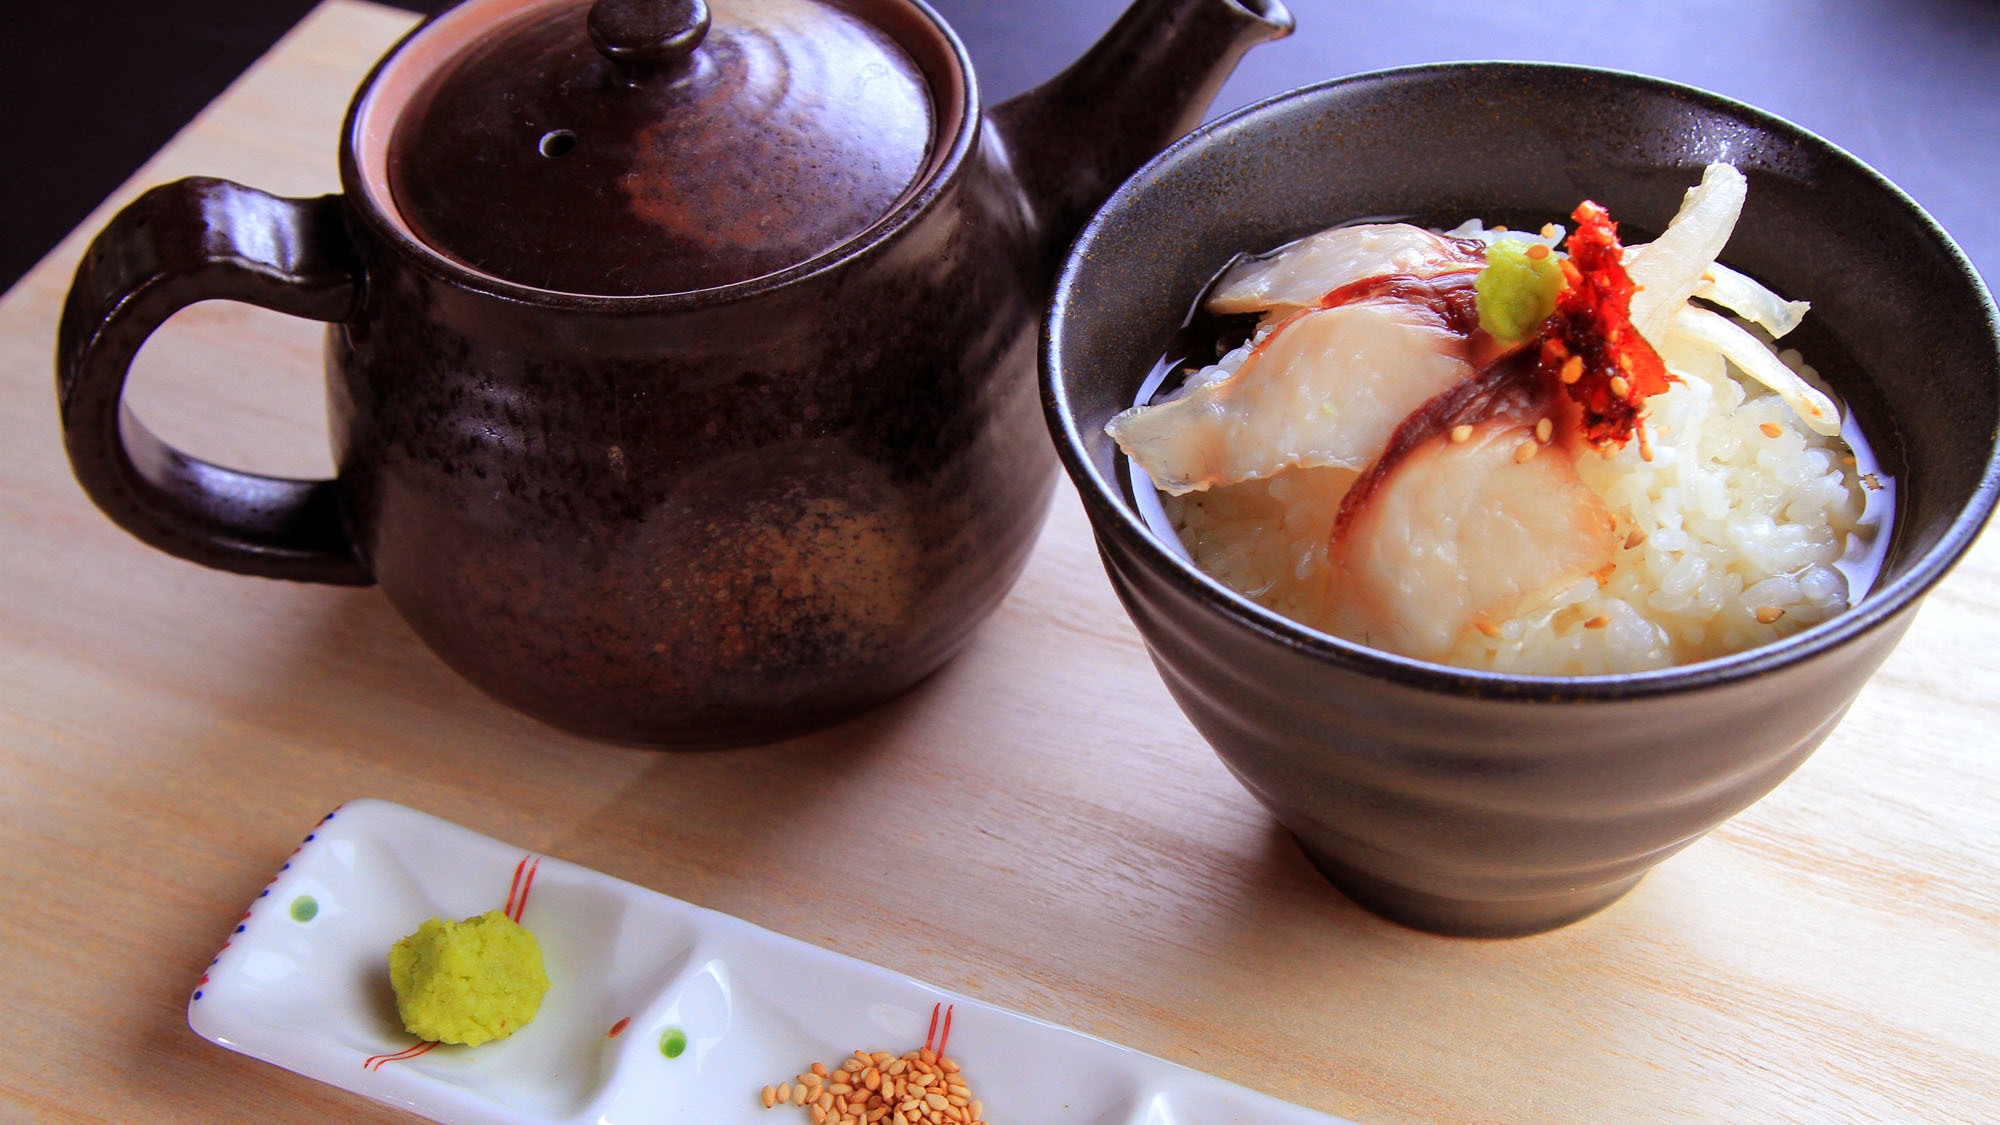 【すき焼き】「湯之元会席」と共に宮崎県産牛の旨味をご堪能下さい【SUKI】【2食付】